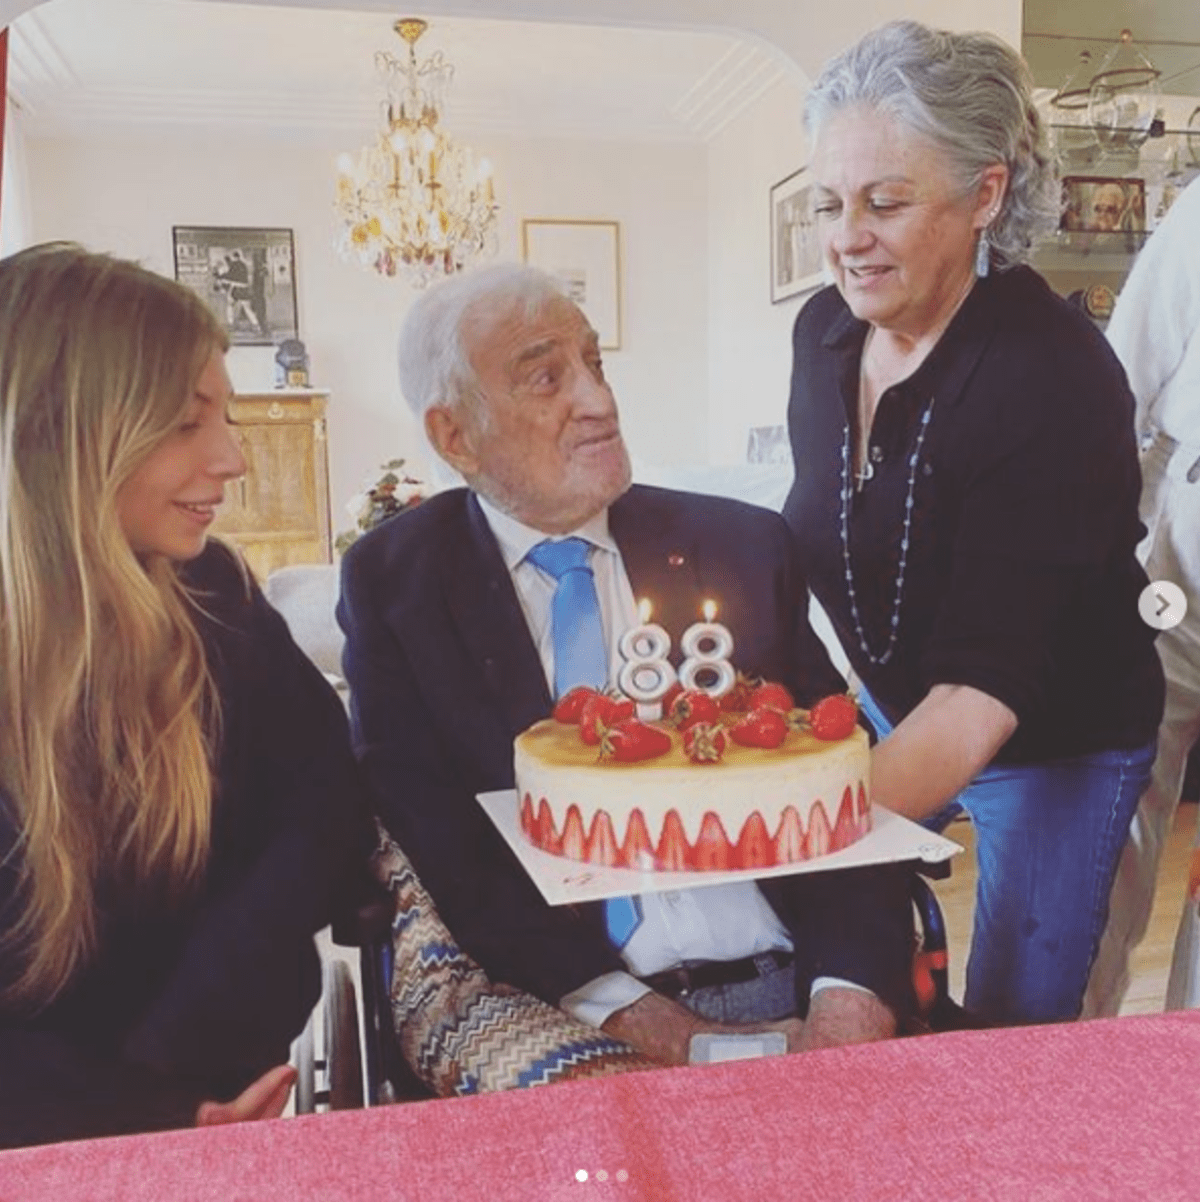 Dcera Florence předává Belmondovi narozeninový dort. (Autor: Florence Belmondo)